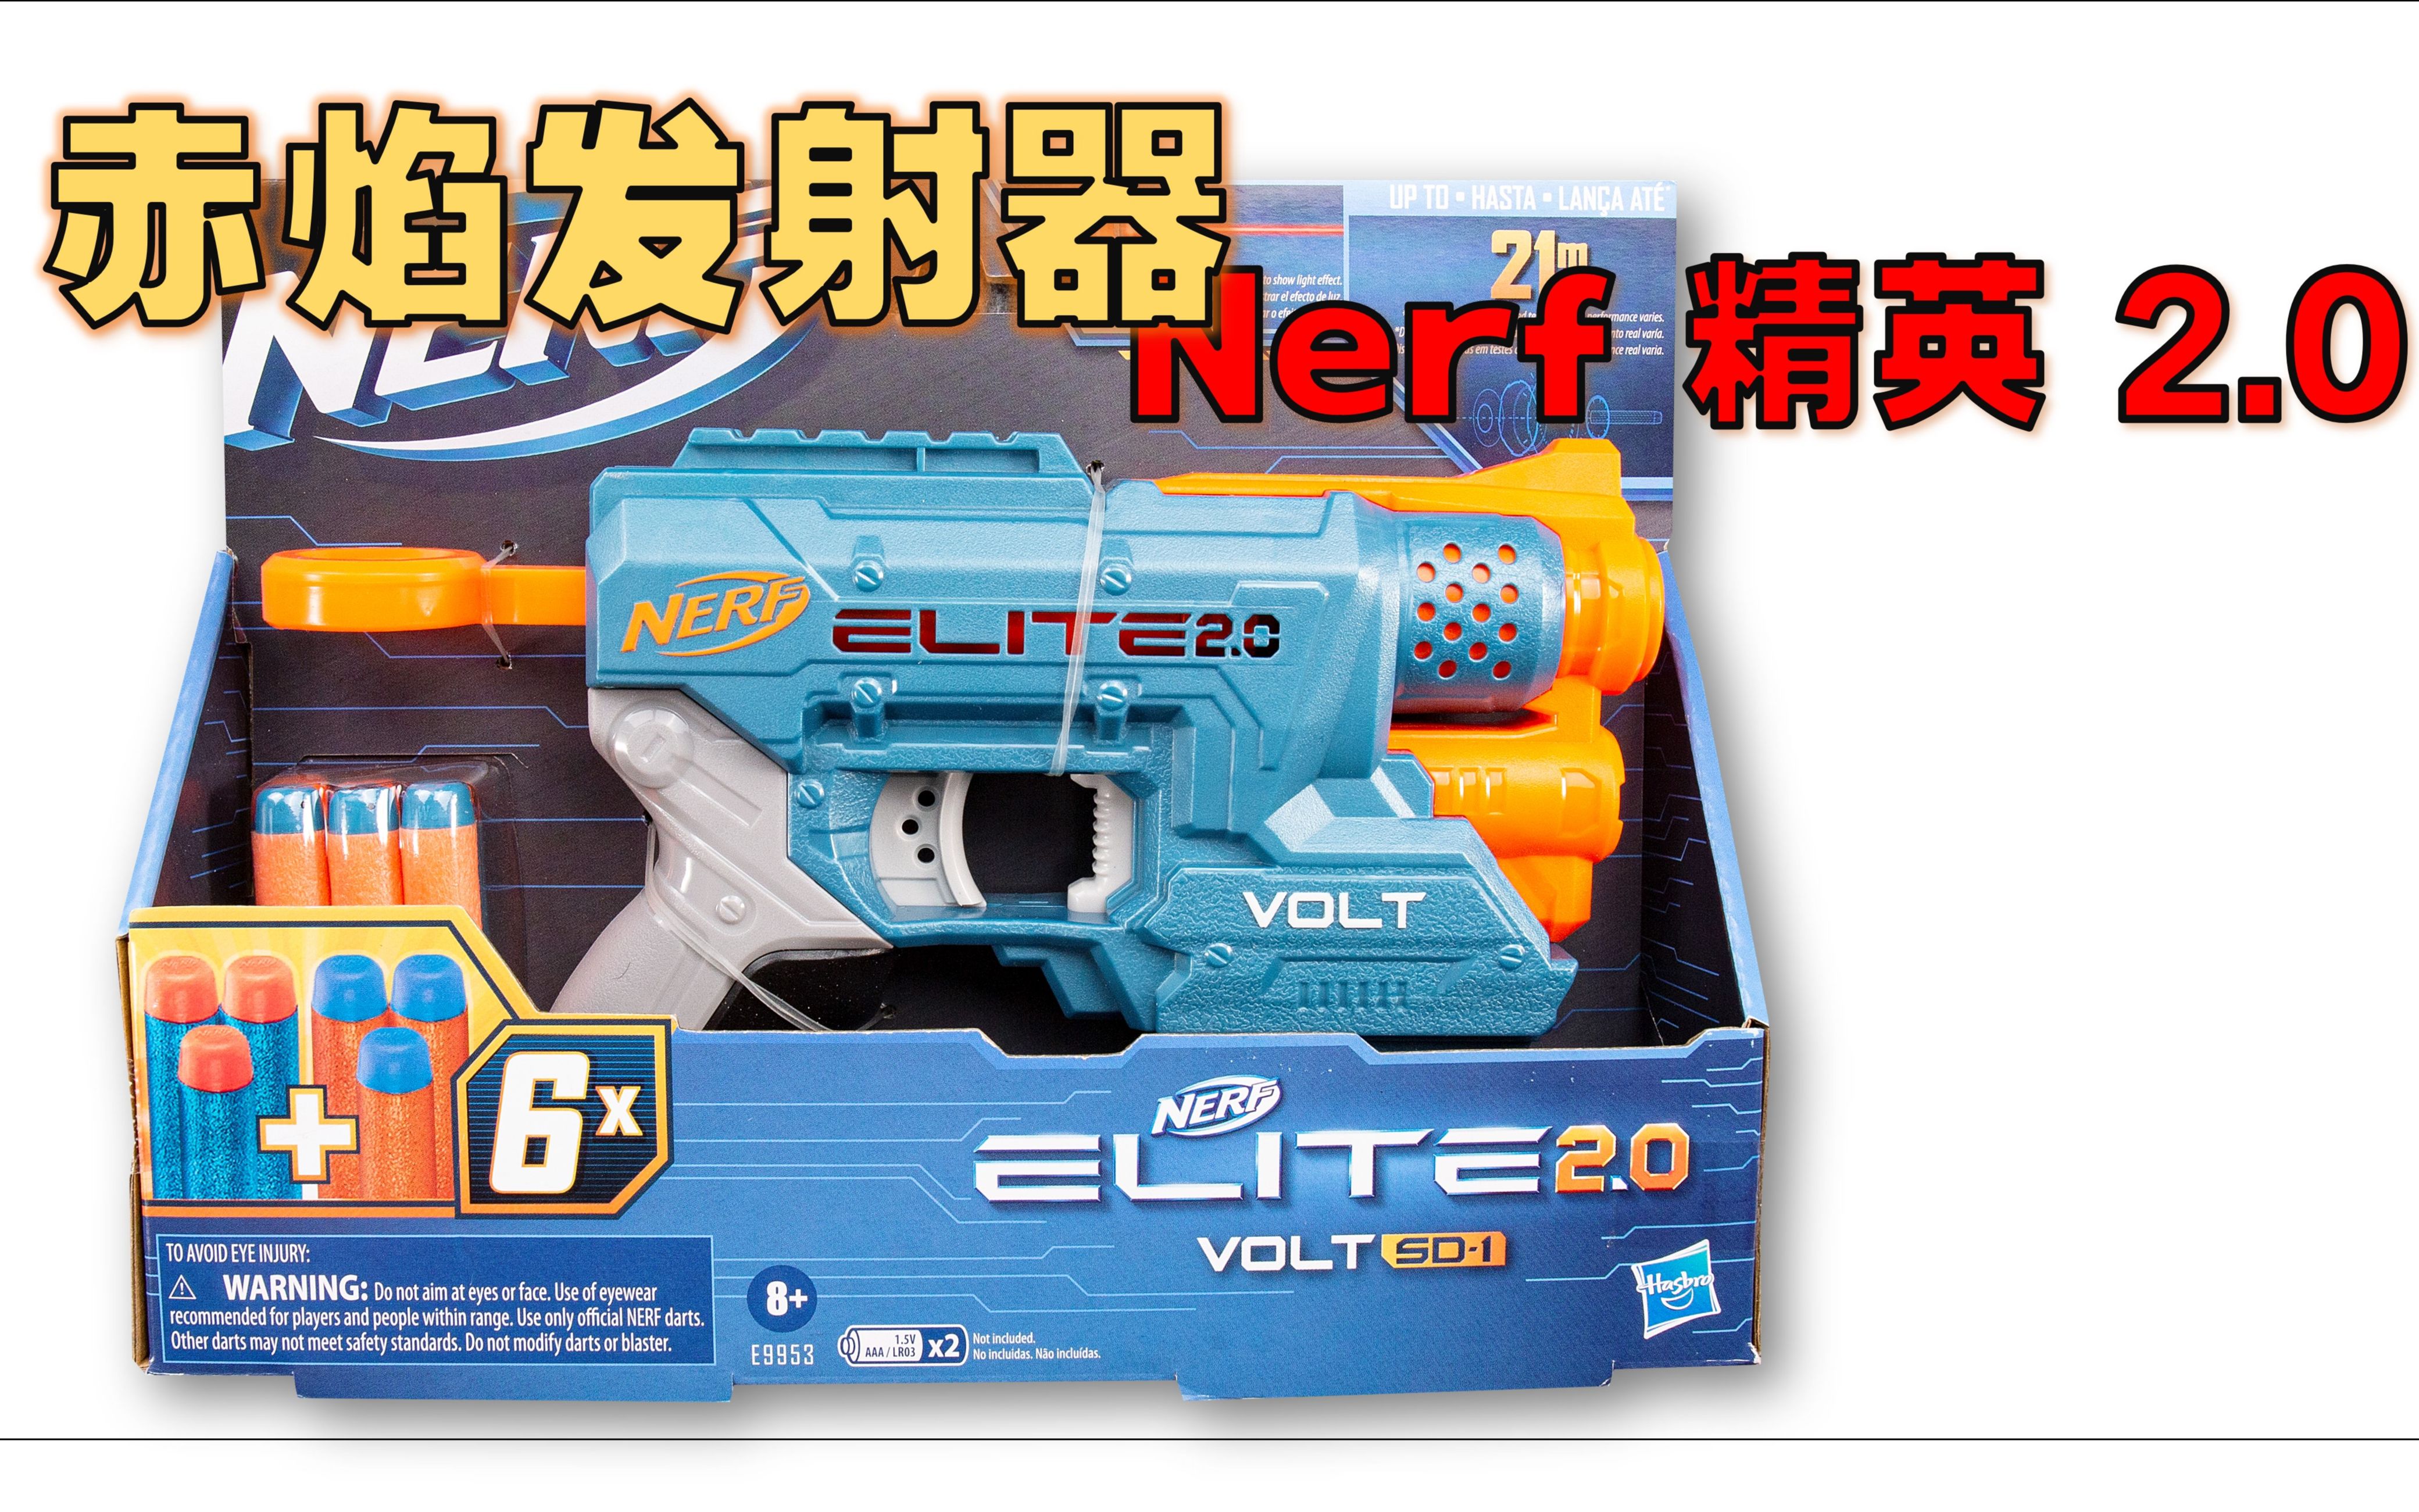 【装扮】Nerf 精英2.0 赤焰发射器 - 对比前任 / 瞄准光束 / 无螺丝孔 / 与规定对比